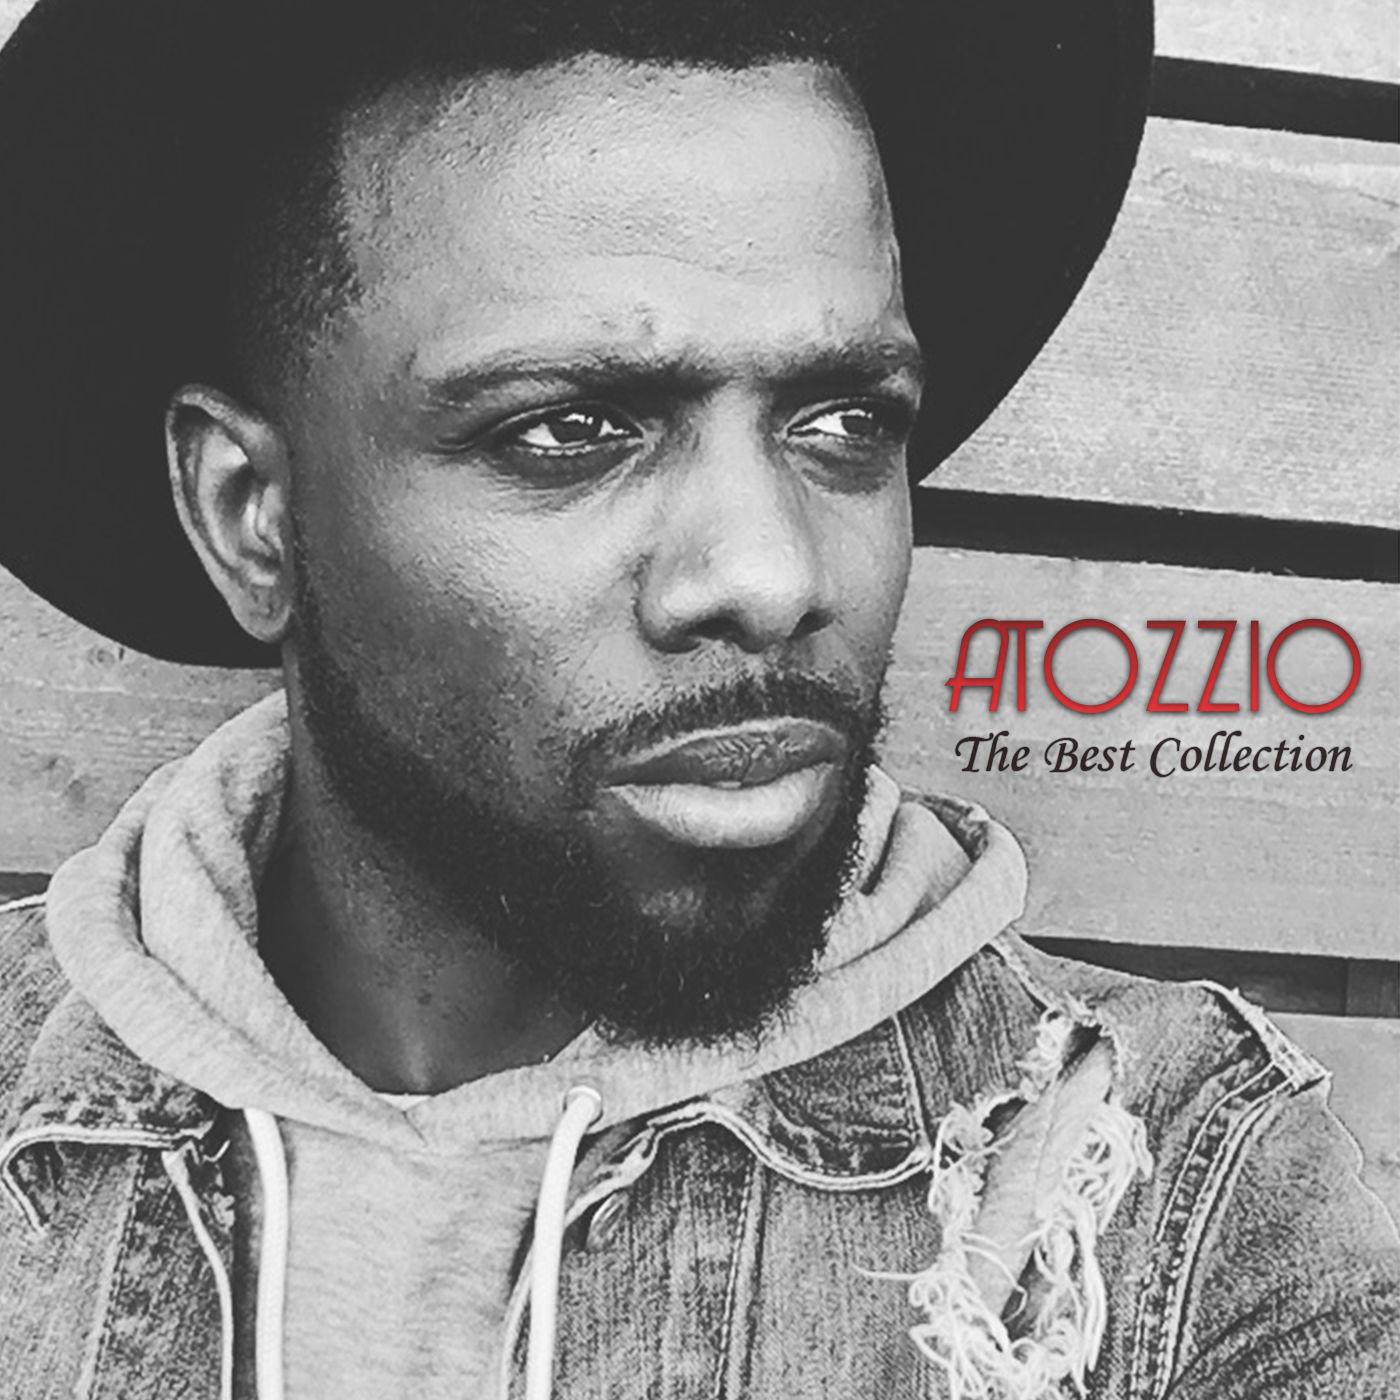 Atozzio - That One Thing